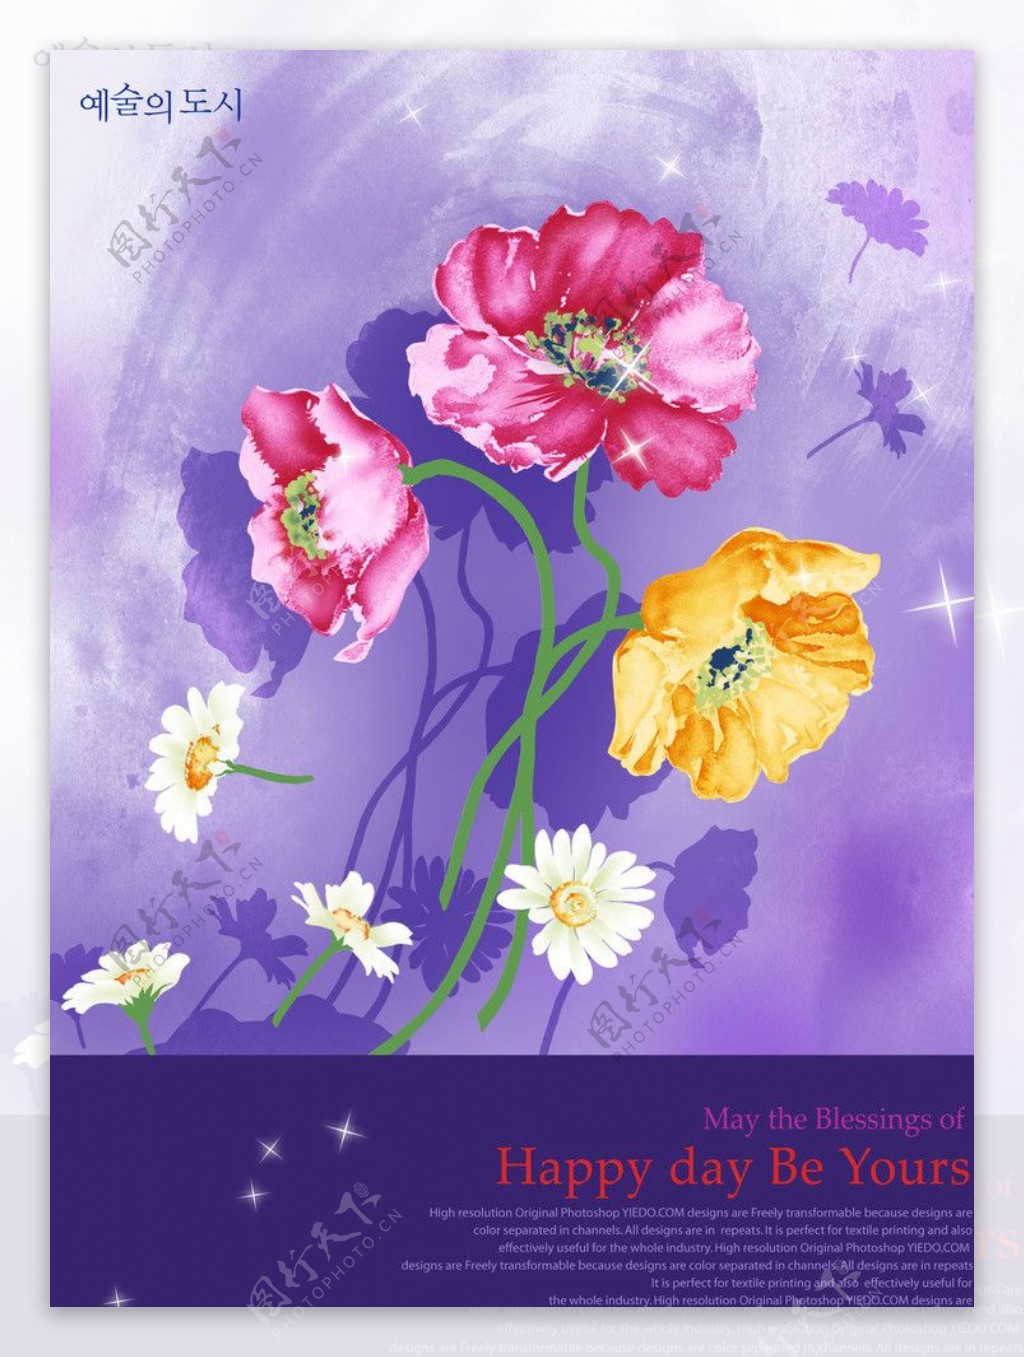 壁纸1680×1050韩国花卉摄影高清宽屏壁纸壁纸,韩国花卉摄影高清宽屏壁纸壁纸图片-植物壁纸-植物图片素材-桌面壁纸